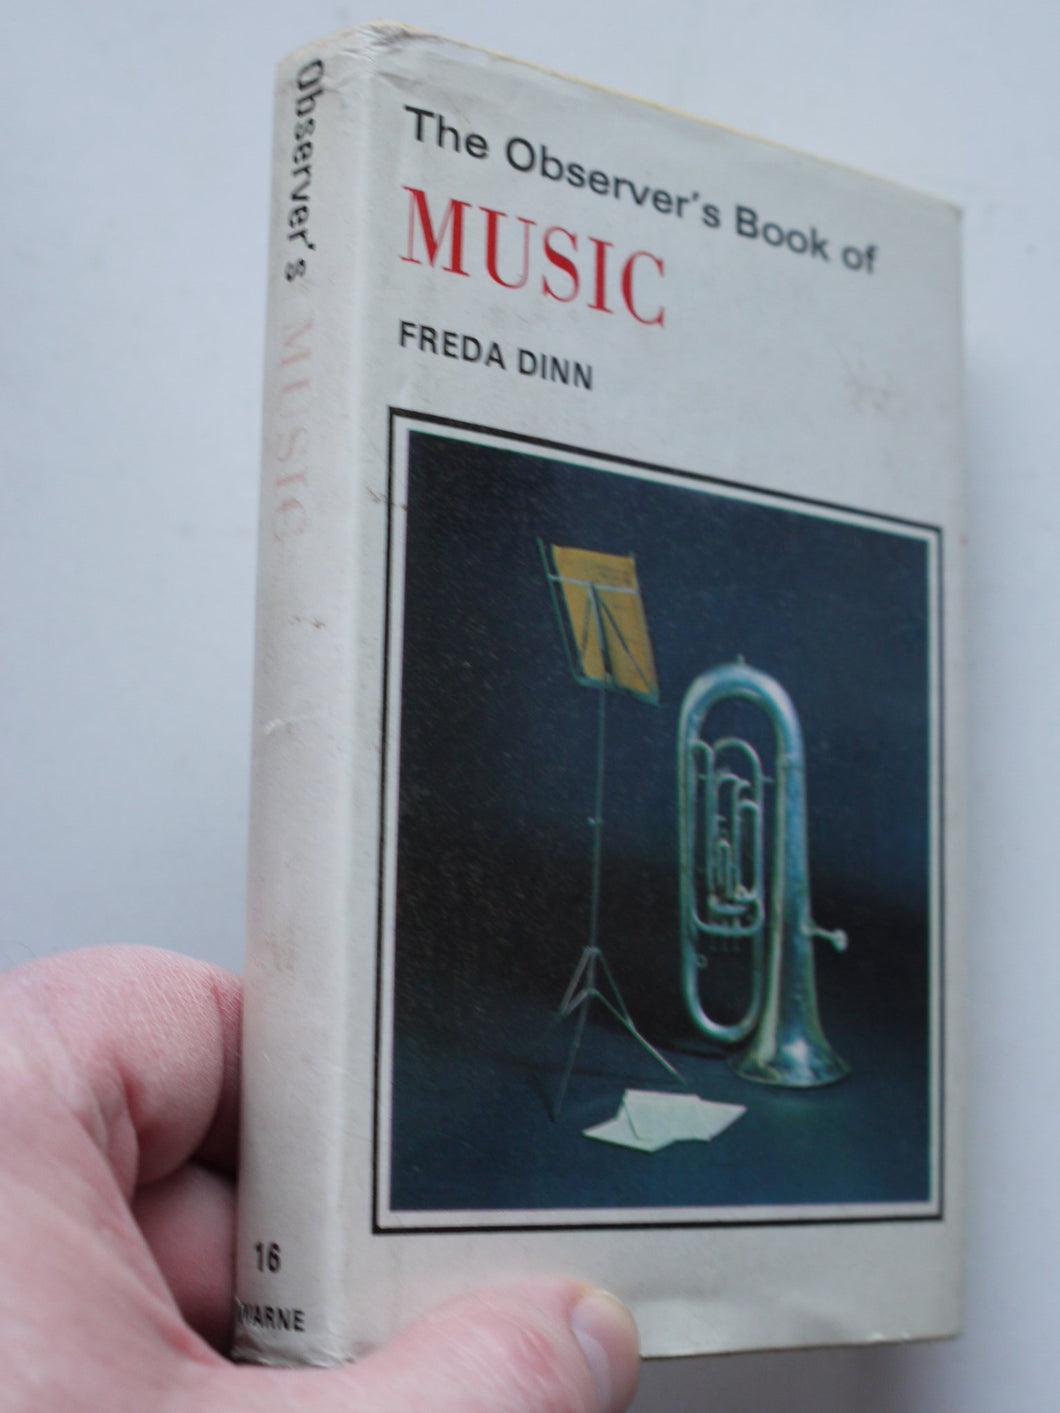 The Observer's Book of Music [Hardcover] Freda Dinn